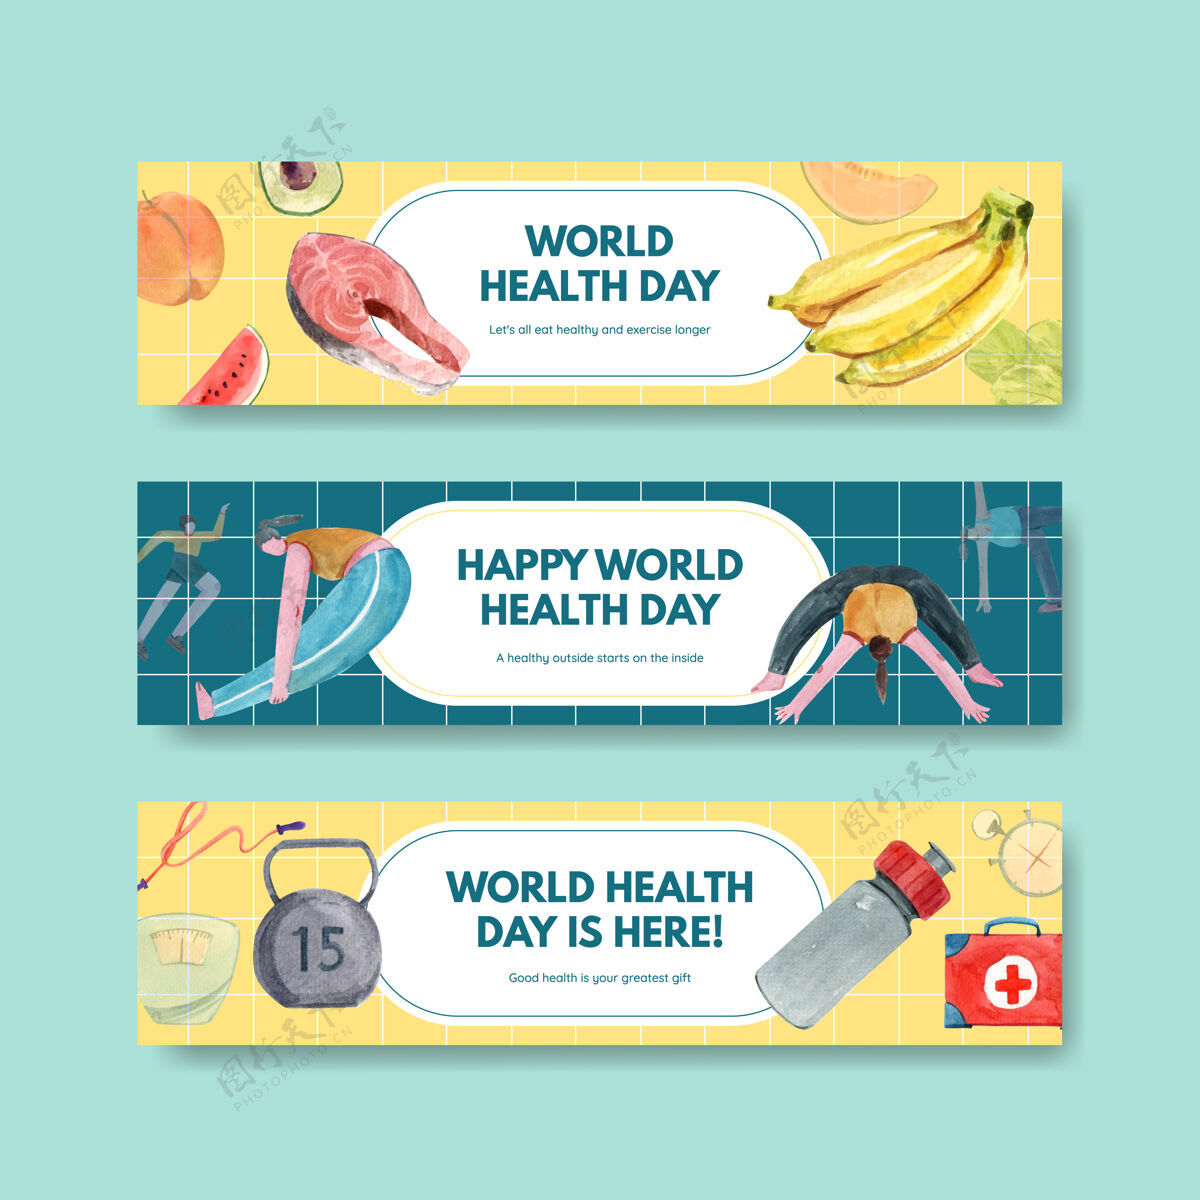 营销水彩画风格的世界卫生日横幅模板鲑鱼标志健康